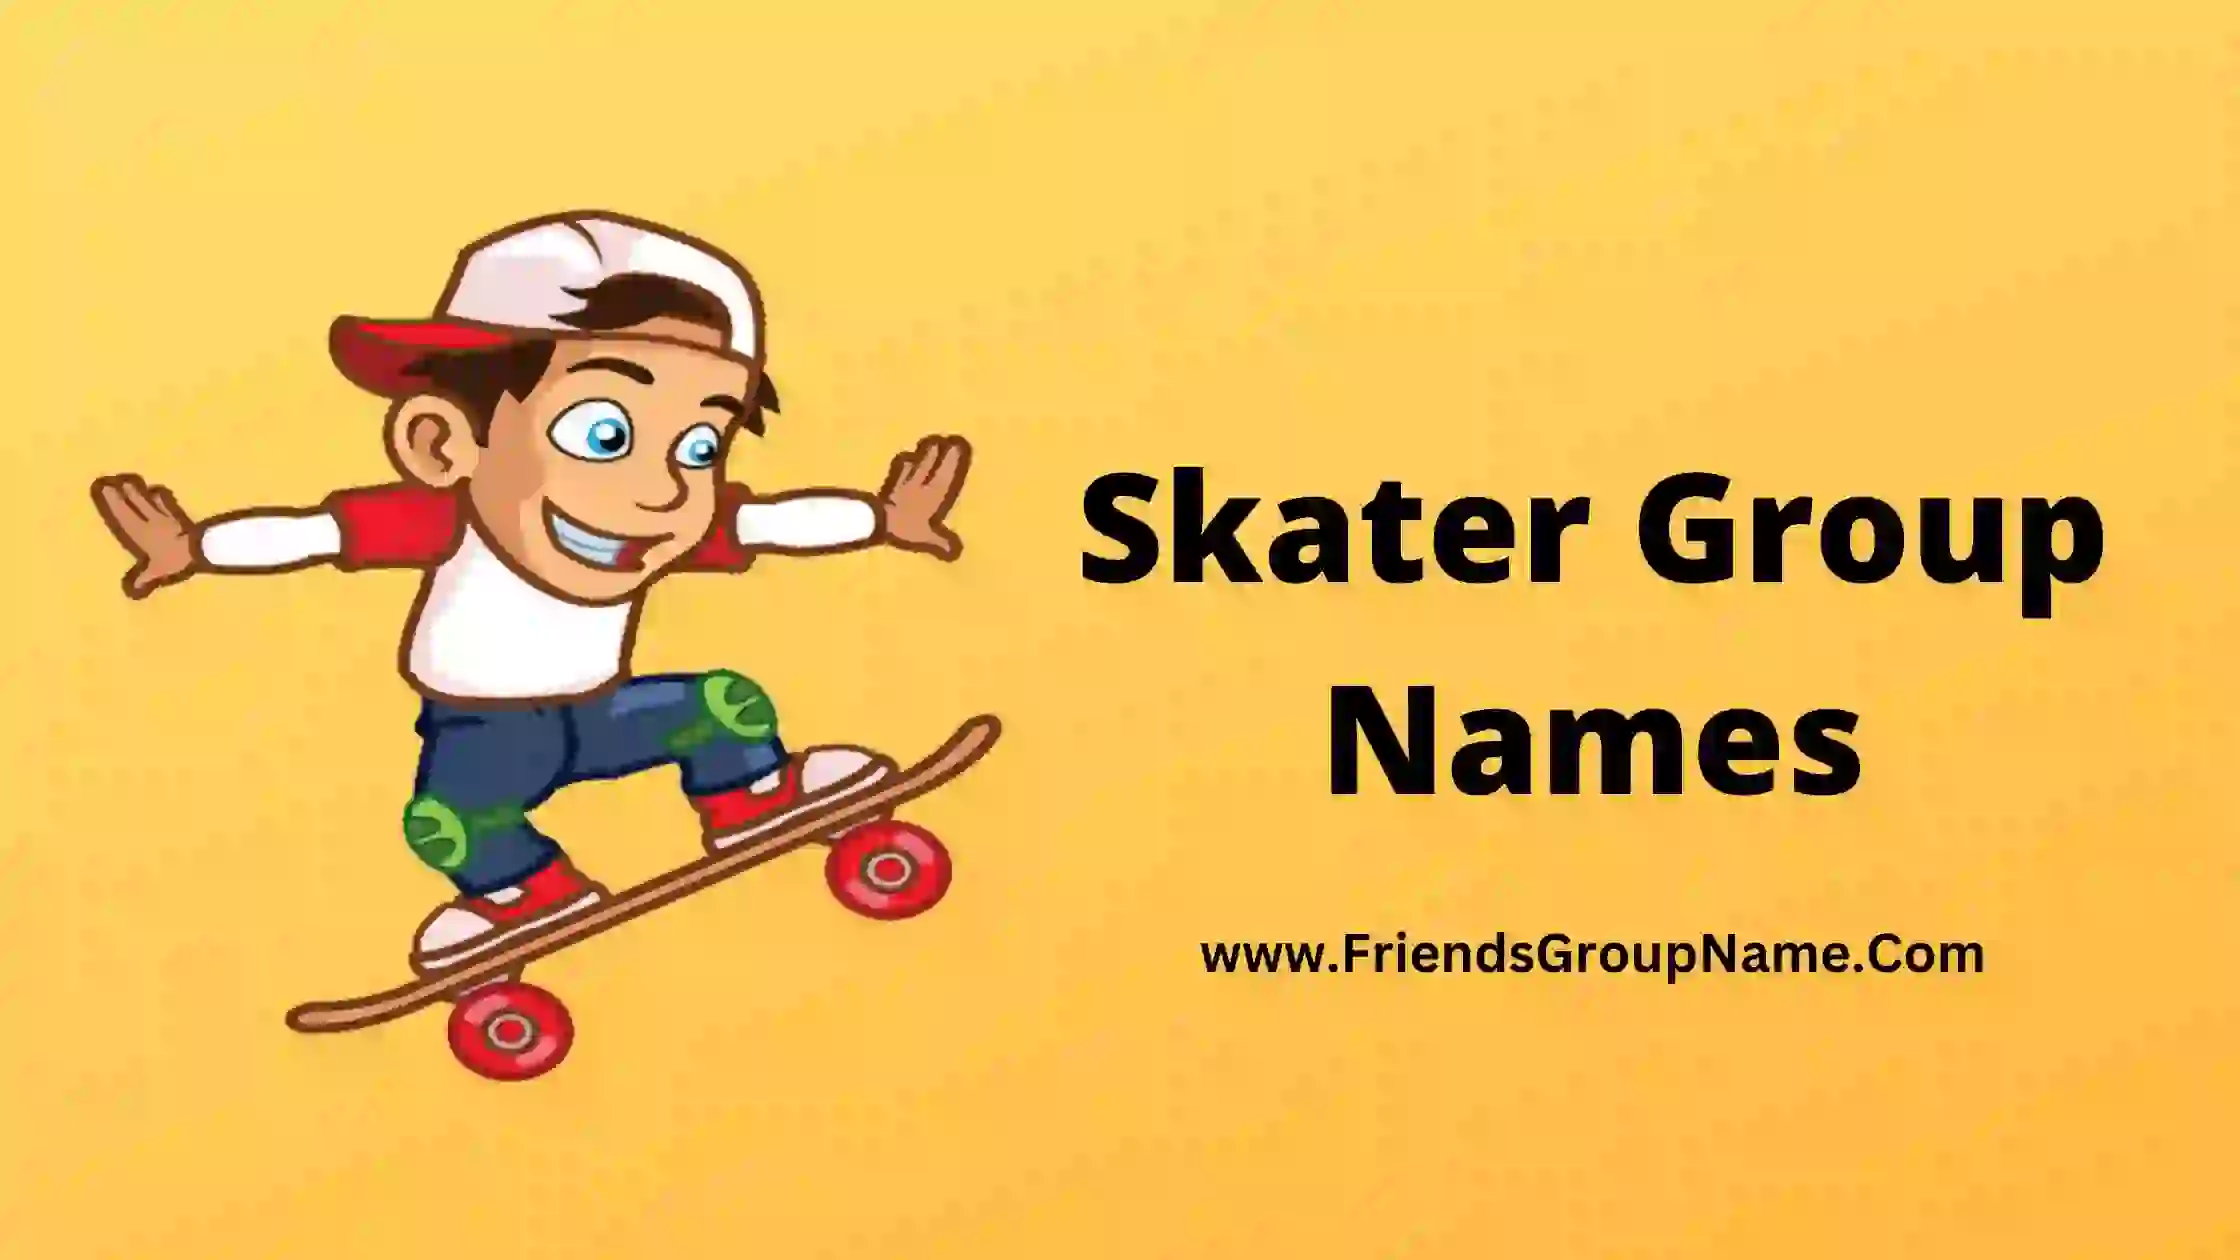 Skater Group Names